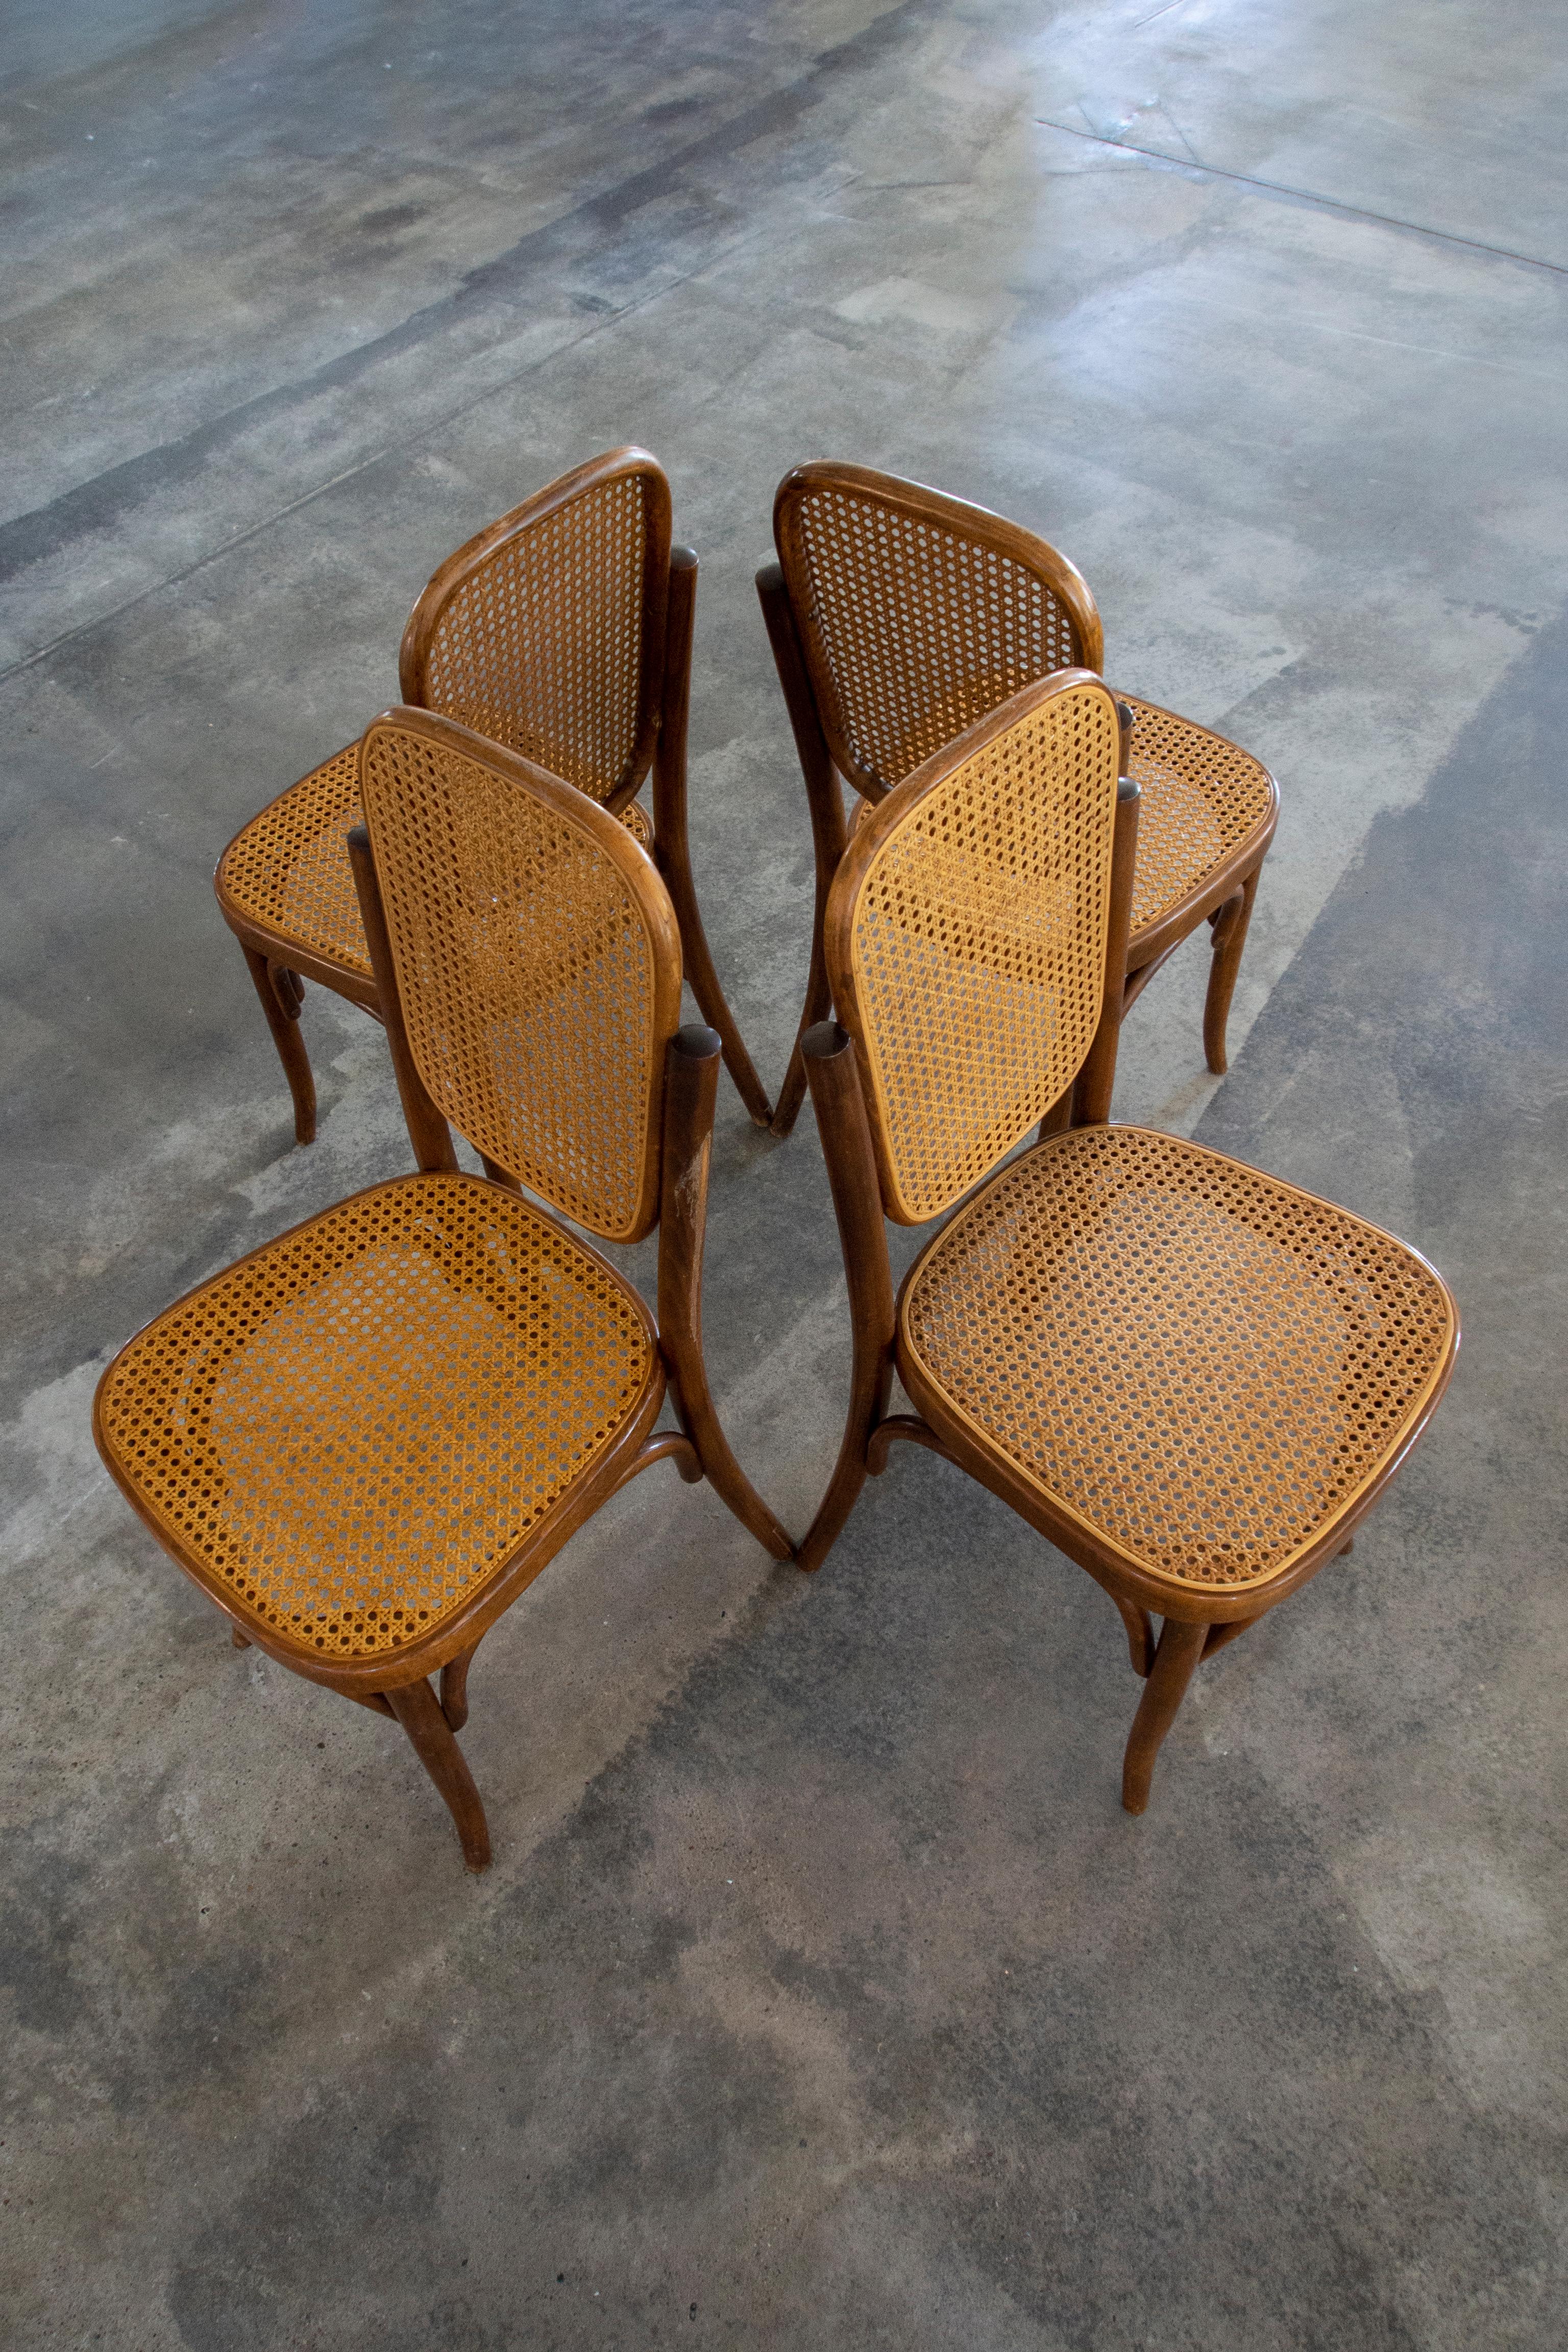 Vous trouverez dans cette liste un ensemble de 4 chaises de salle à manger en osier fabriquées par Thonet-Mundus en Yougoslavie, dans la période qui a suivi la séparation de Thonet-Mundus avec Thonet. Les chaises sont en rotin et en hêtre courbé. Le